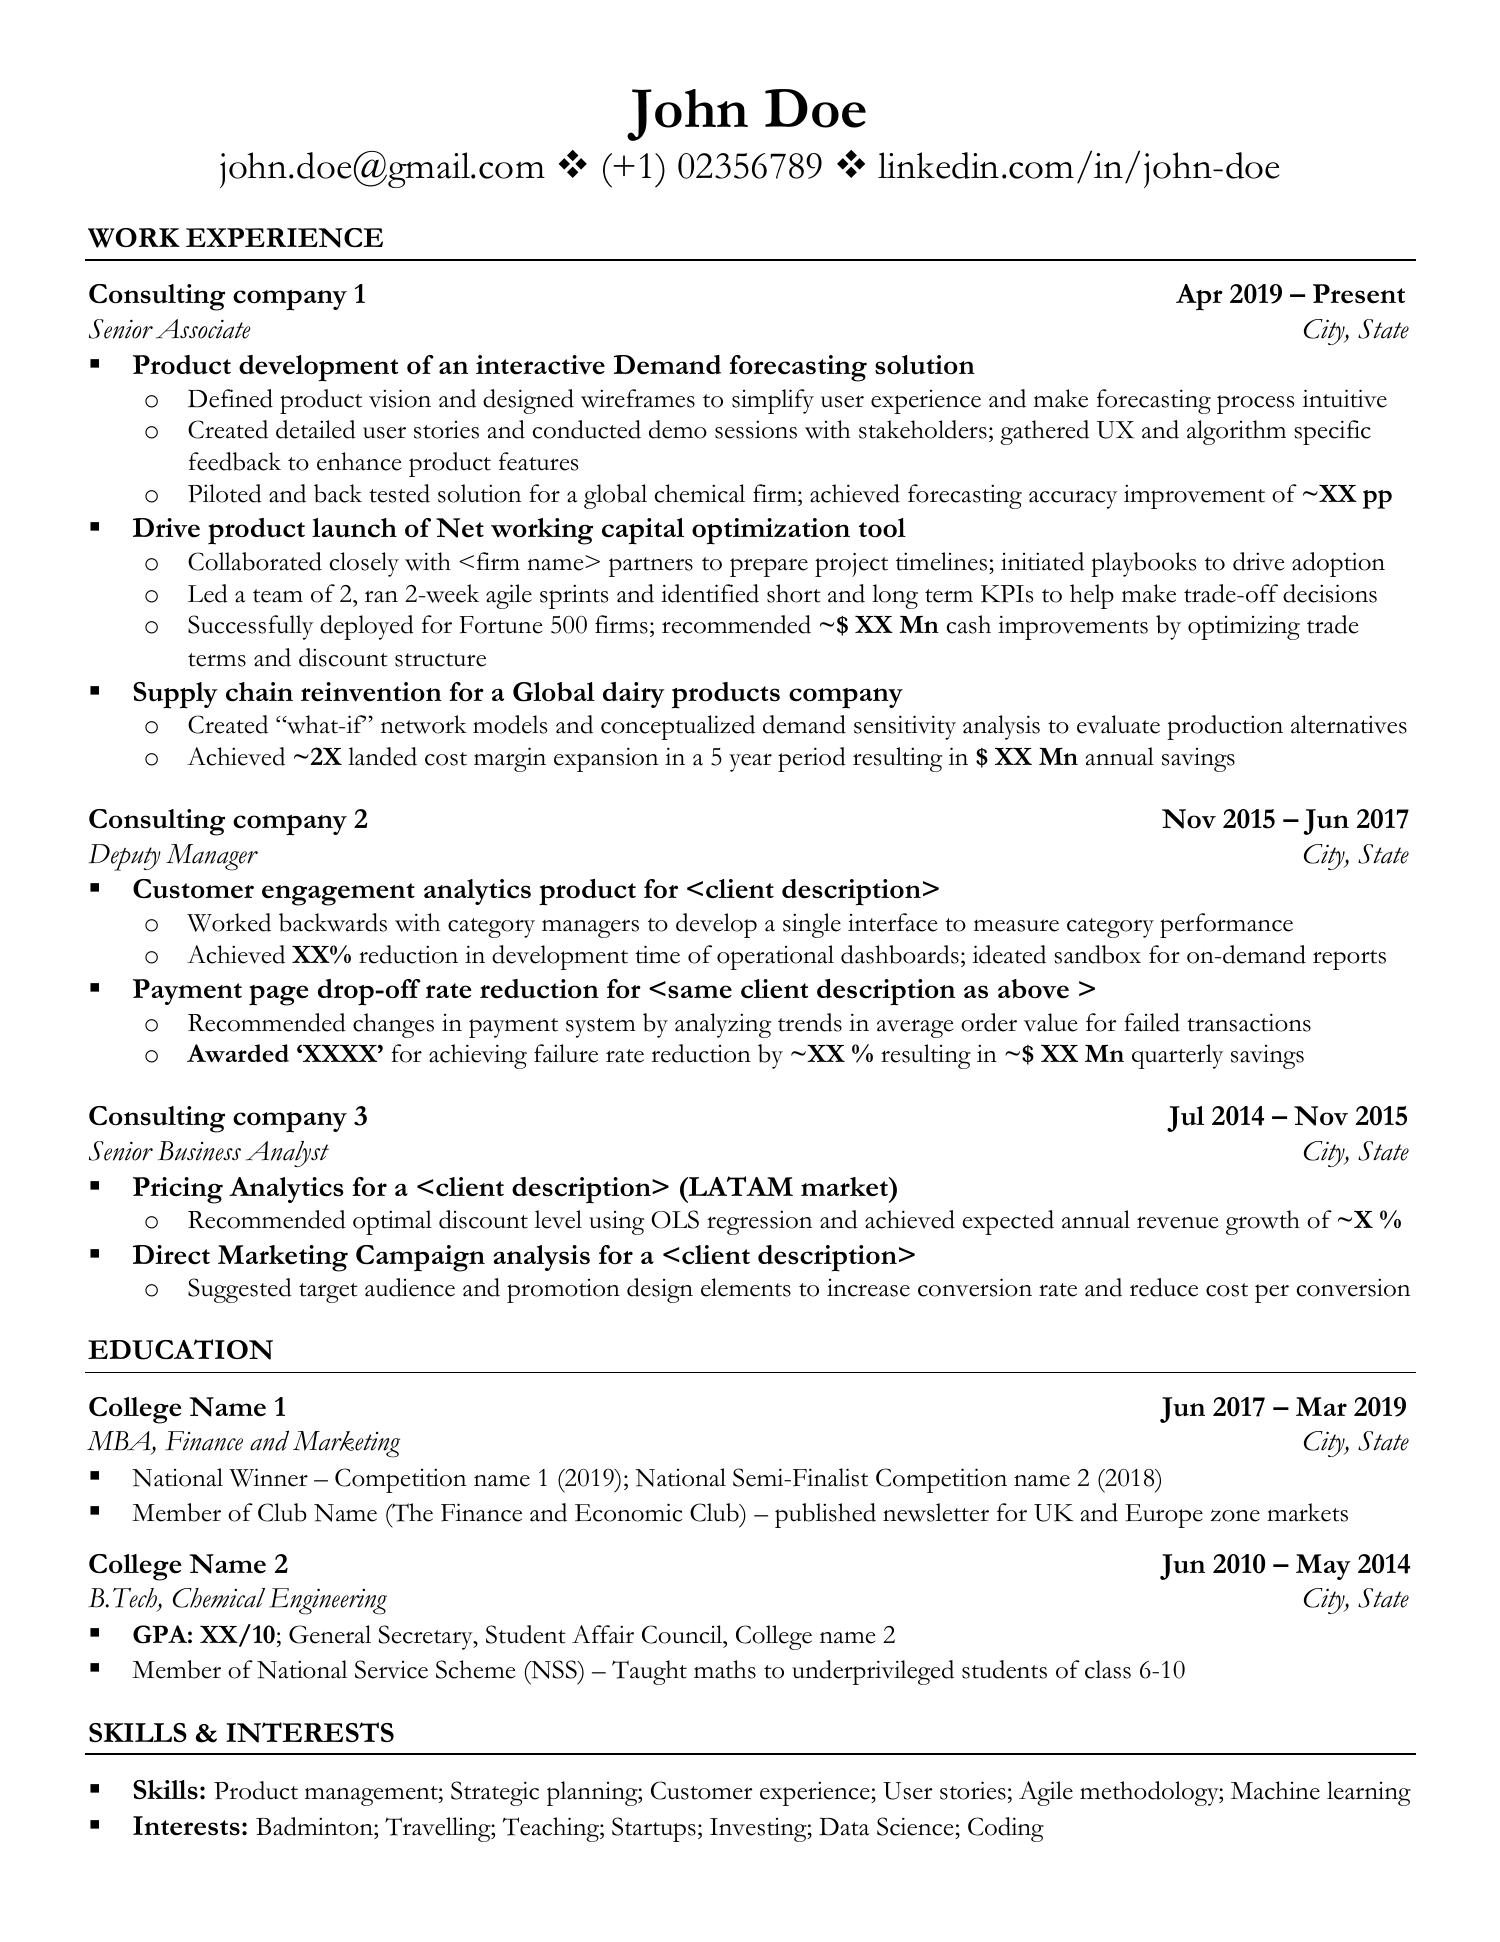 functional resume template reddit